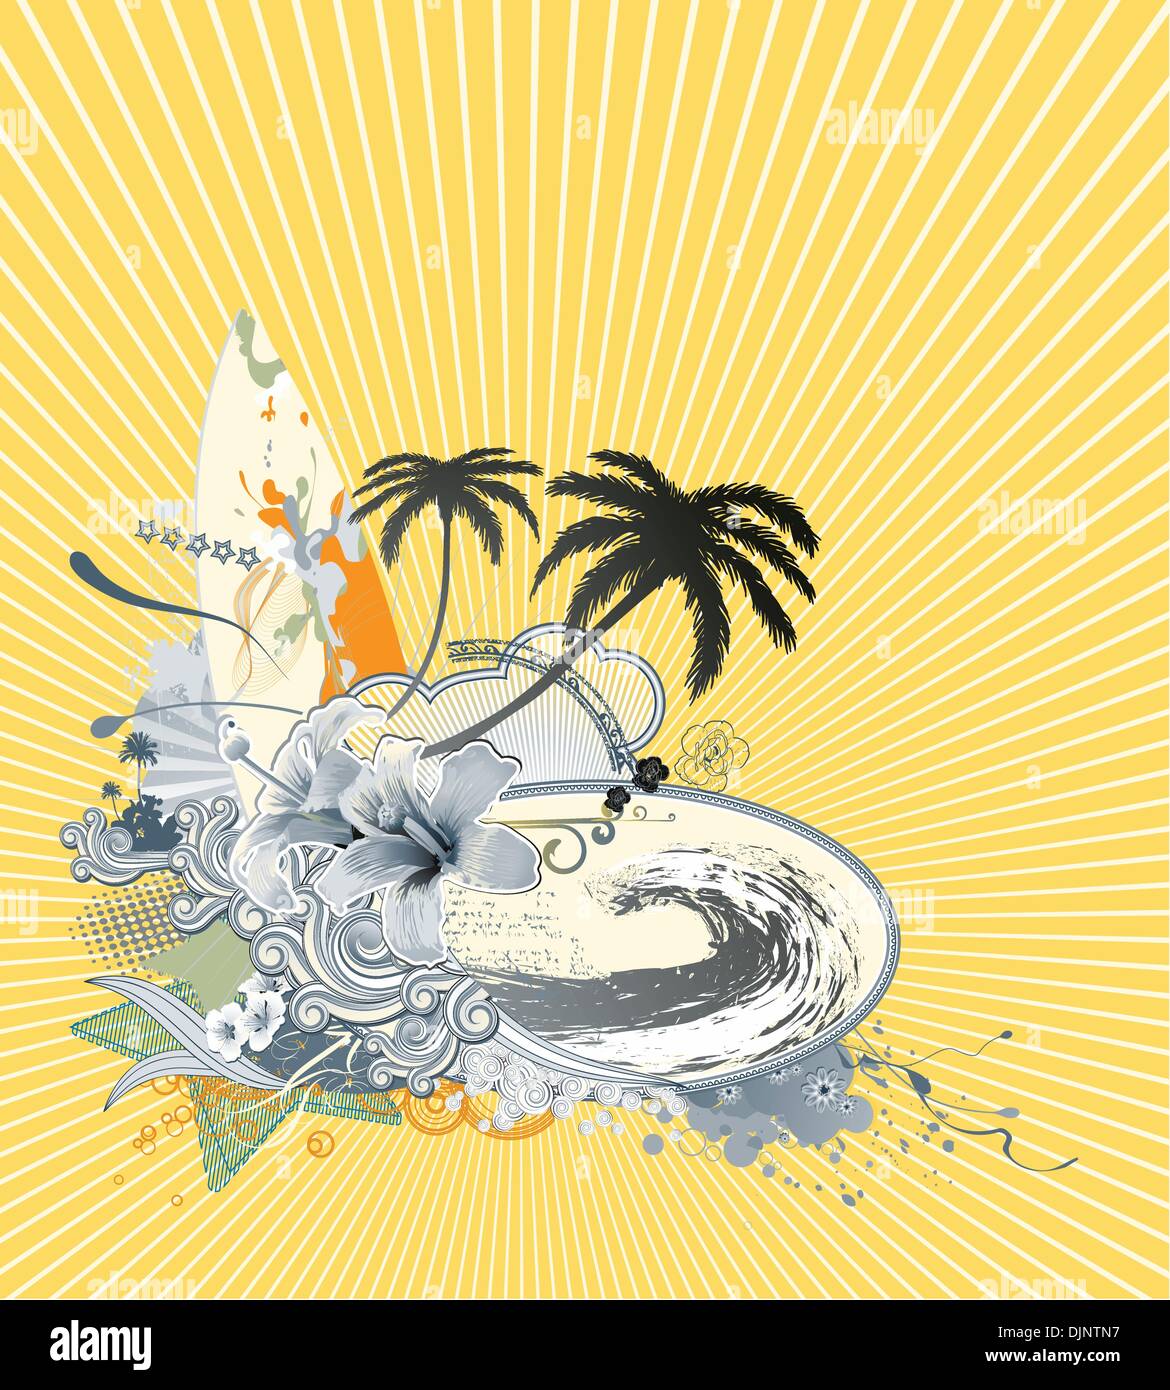 Illustrazione Vettoriale di estate composizione con tavola da surf più grande onda, hibiscus, palme silhouette e ricci strisce retrò Illustrazione Vettoriale